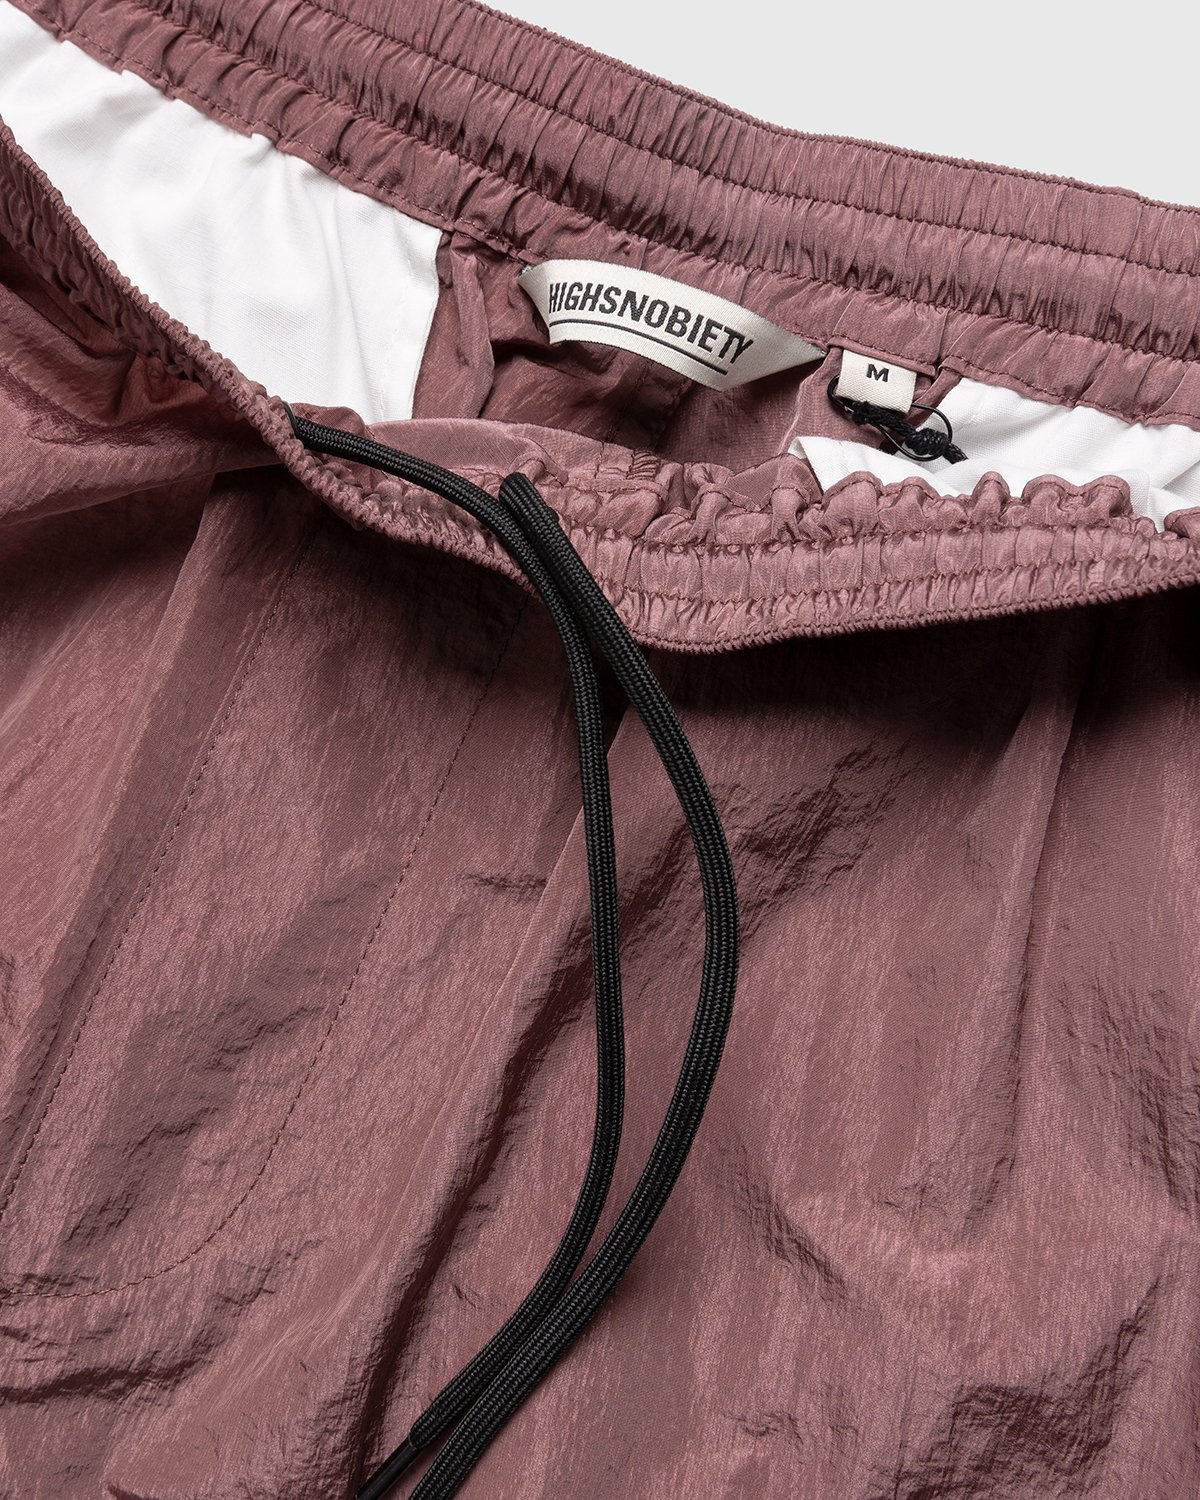 Highsnobiety - Crepe Nylon Elastic Pants Rose Gold - Clothing - Pink - Image 5